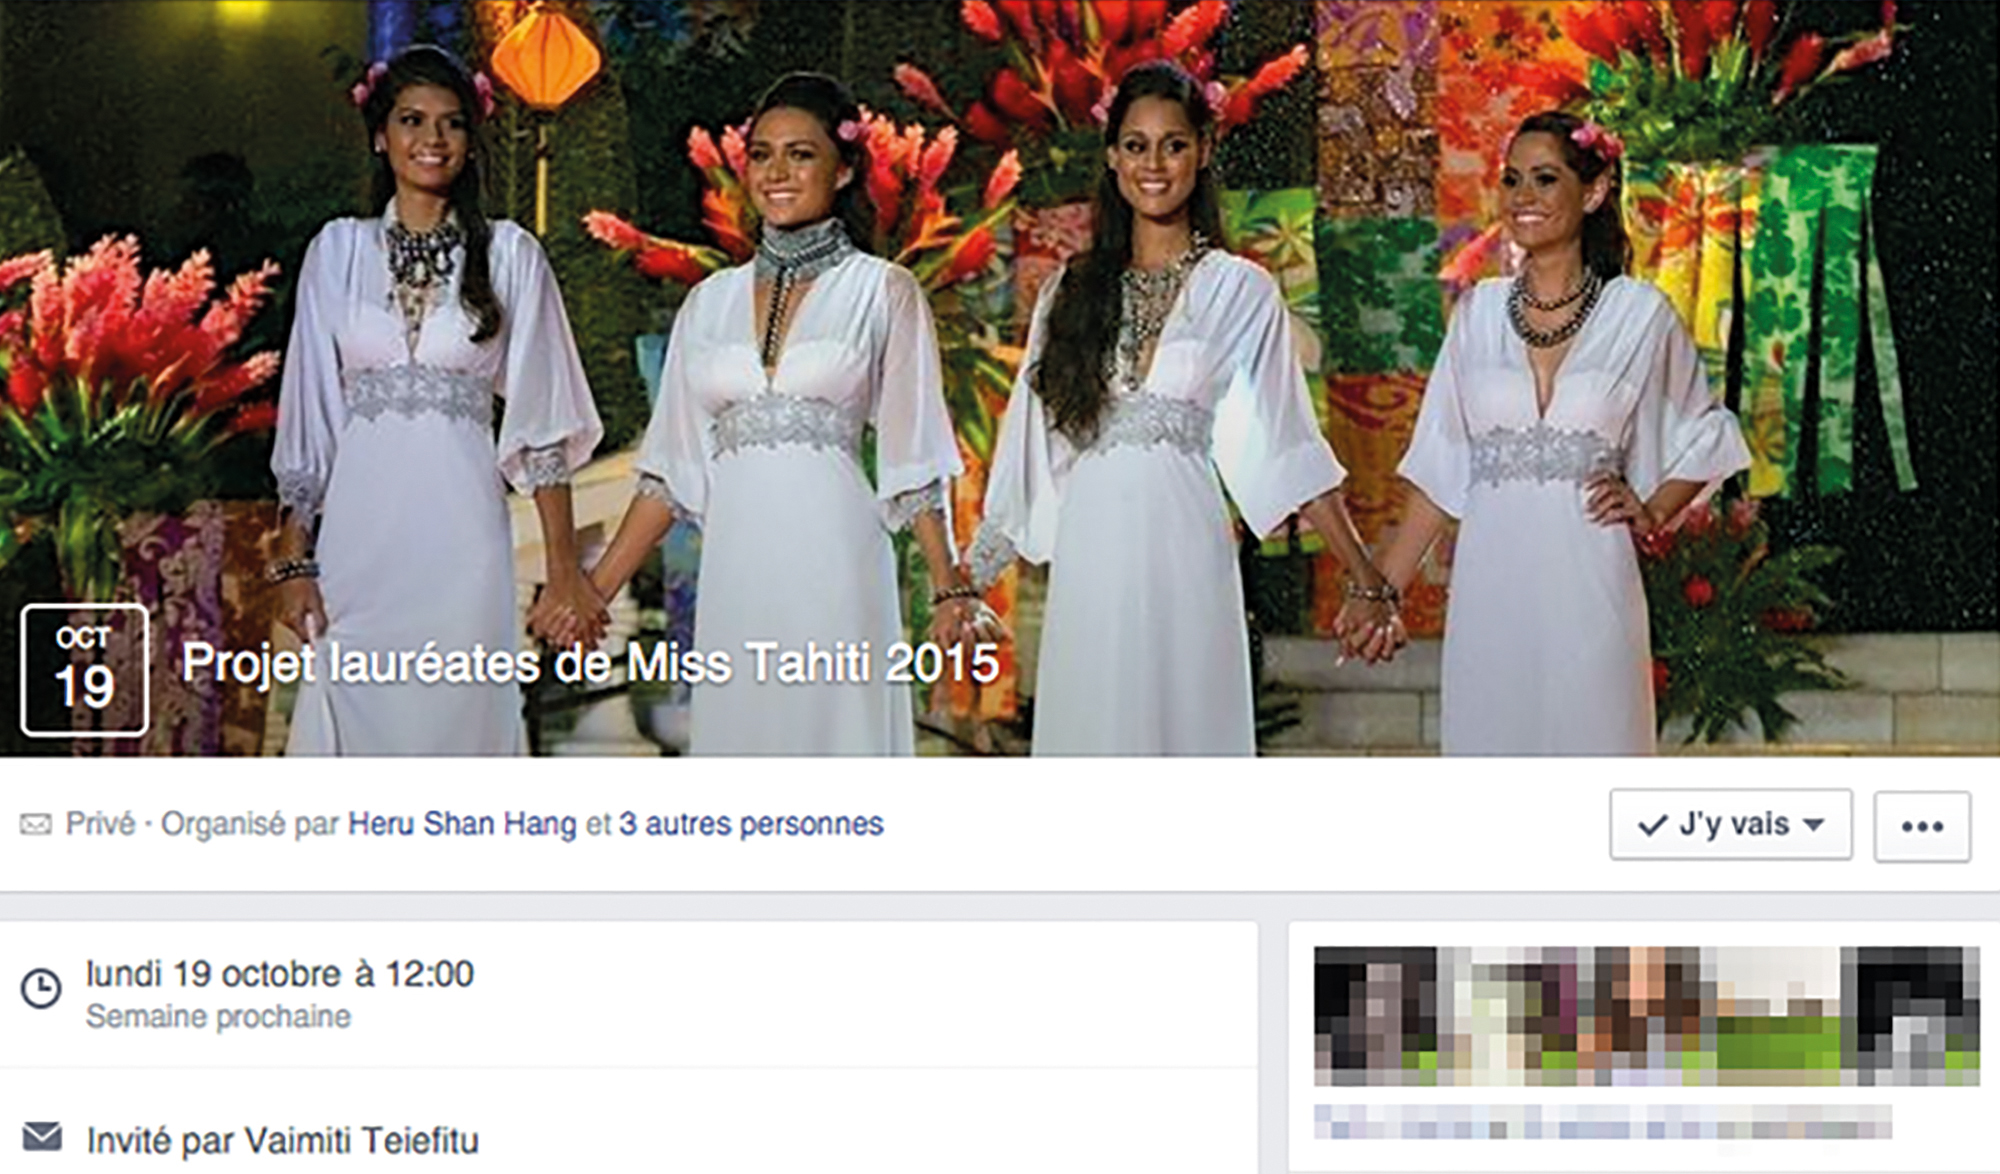 Pour assurer leur déplacement à Paris, les dauphines de Miss Tahiti 2015, organisent des ventes de plats sur une page privée de facebook. "Nous n'avons pas voulu organiser une grande vente de plats parce que cela risquerait de nous demander trop de travail à gérer. Donc, nous avons décidé de nous rapprocher de nos amis sur facebook", explique Heru Shan Hang, Miss Heiva, et de poursuivre, "c'est vrai qu'il y a du monde qui nous propose leur aide, ils peuvent toujours nous laisser des messages de soutien sur nos pages officielles de facebook".